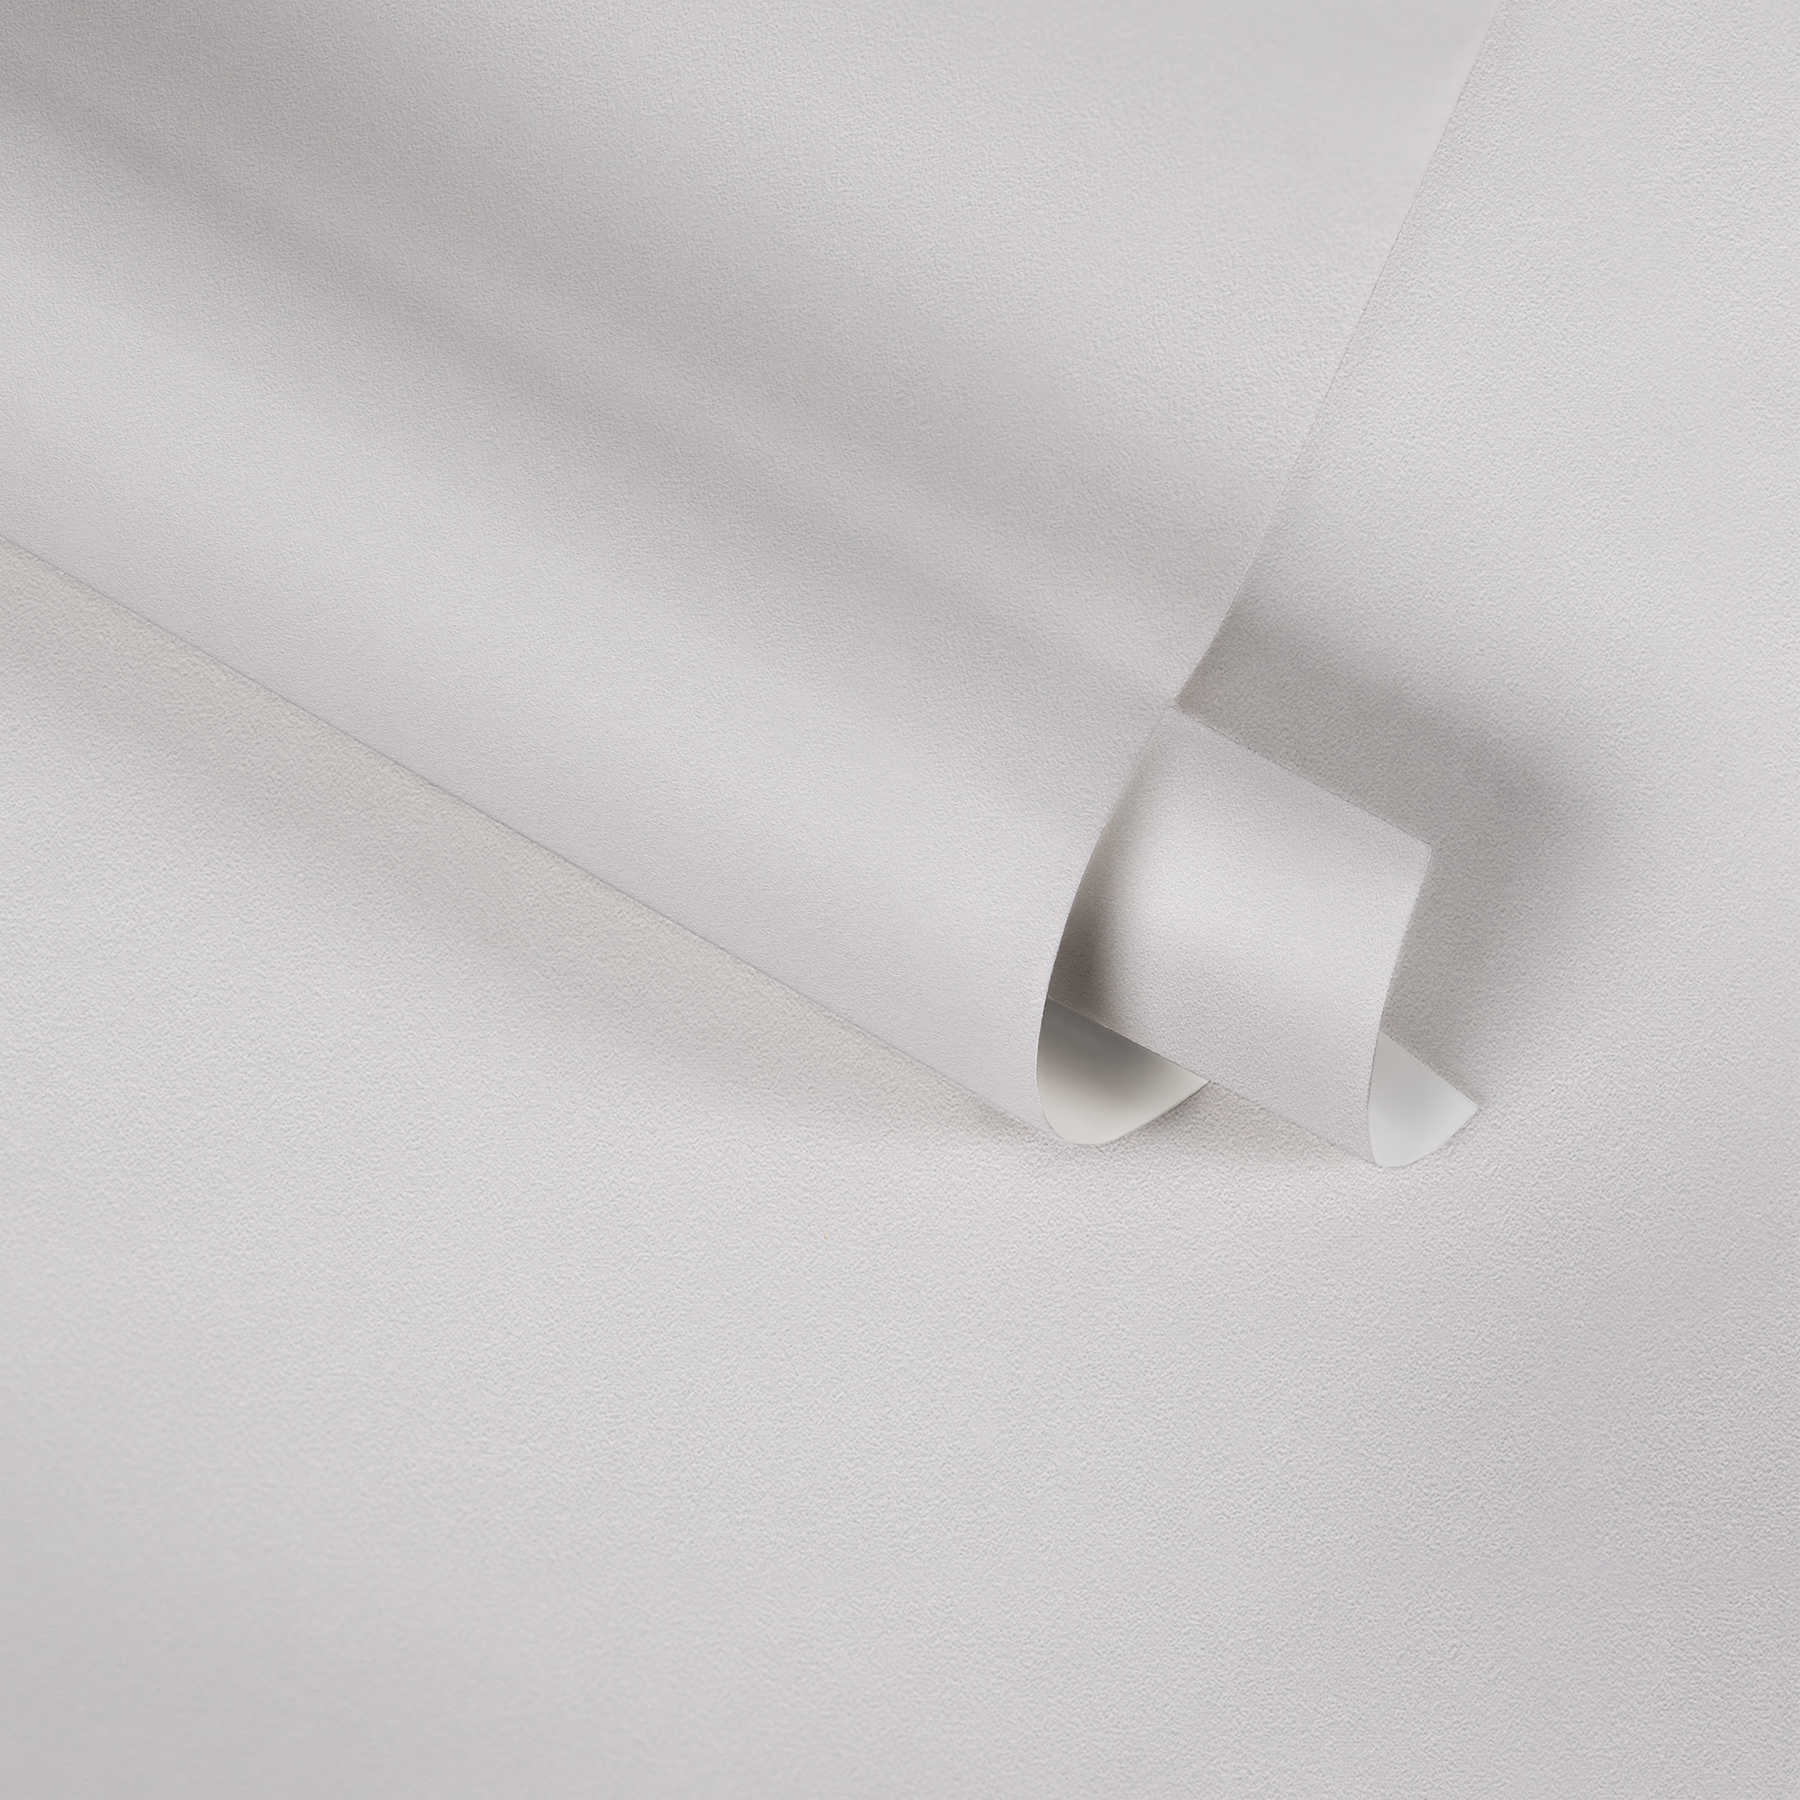             Papier peint avec structure gaufrée & uni design - Blanc
        